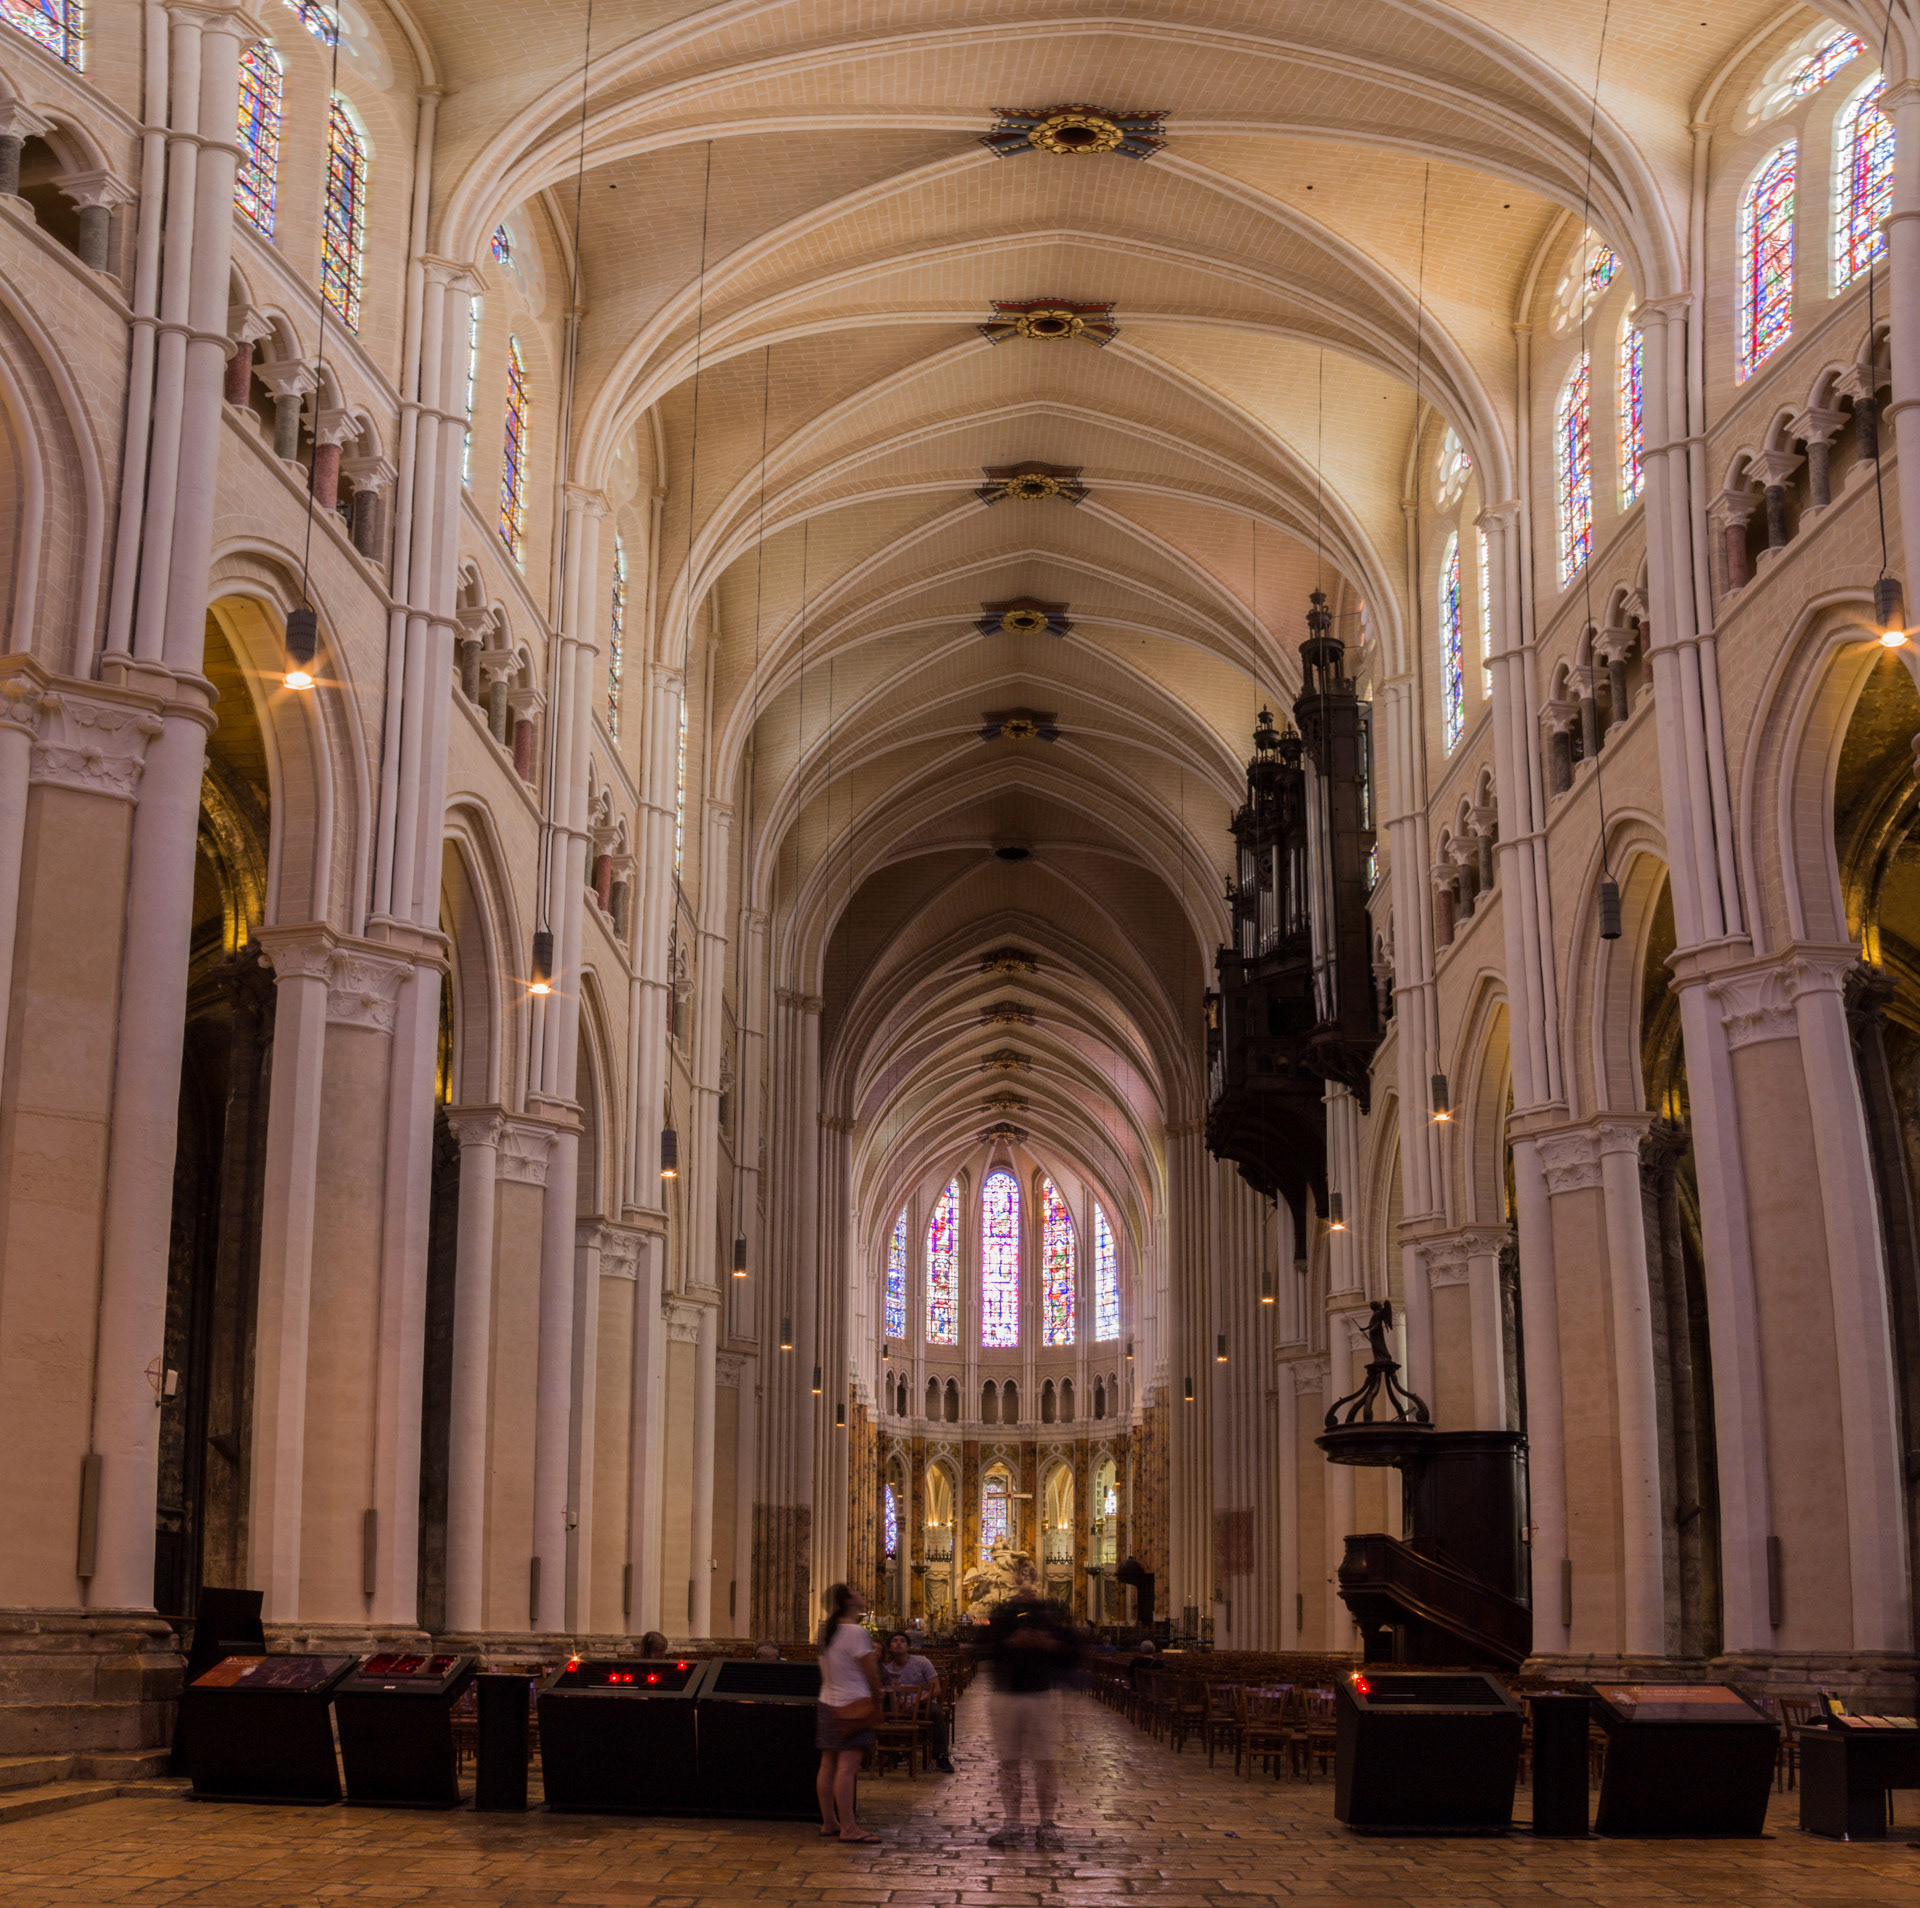 David Balaam Chartres Cathedral Interior 2018